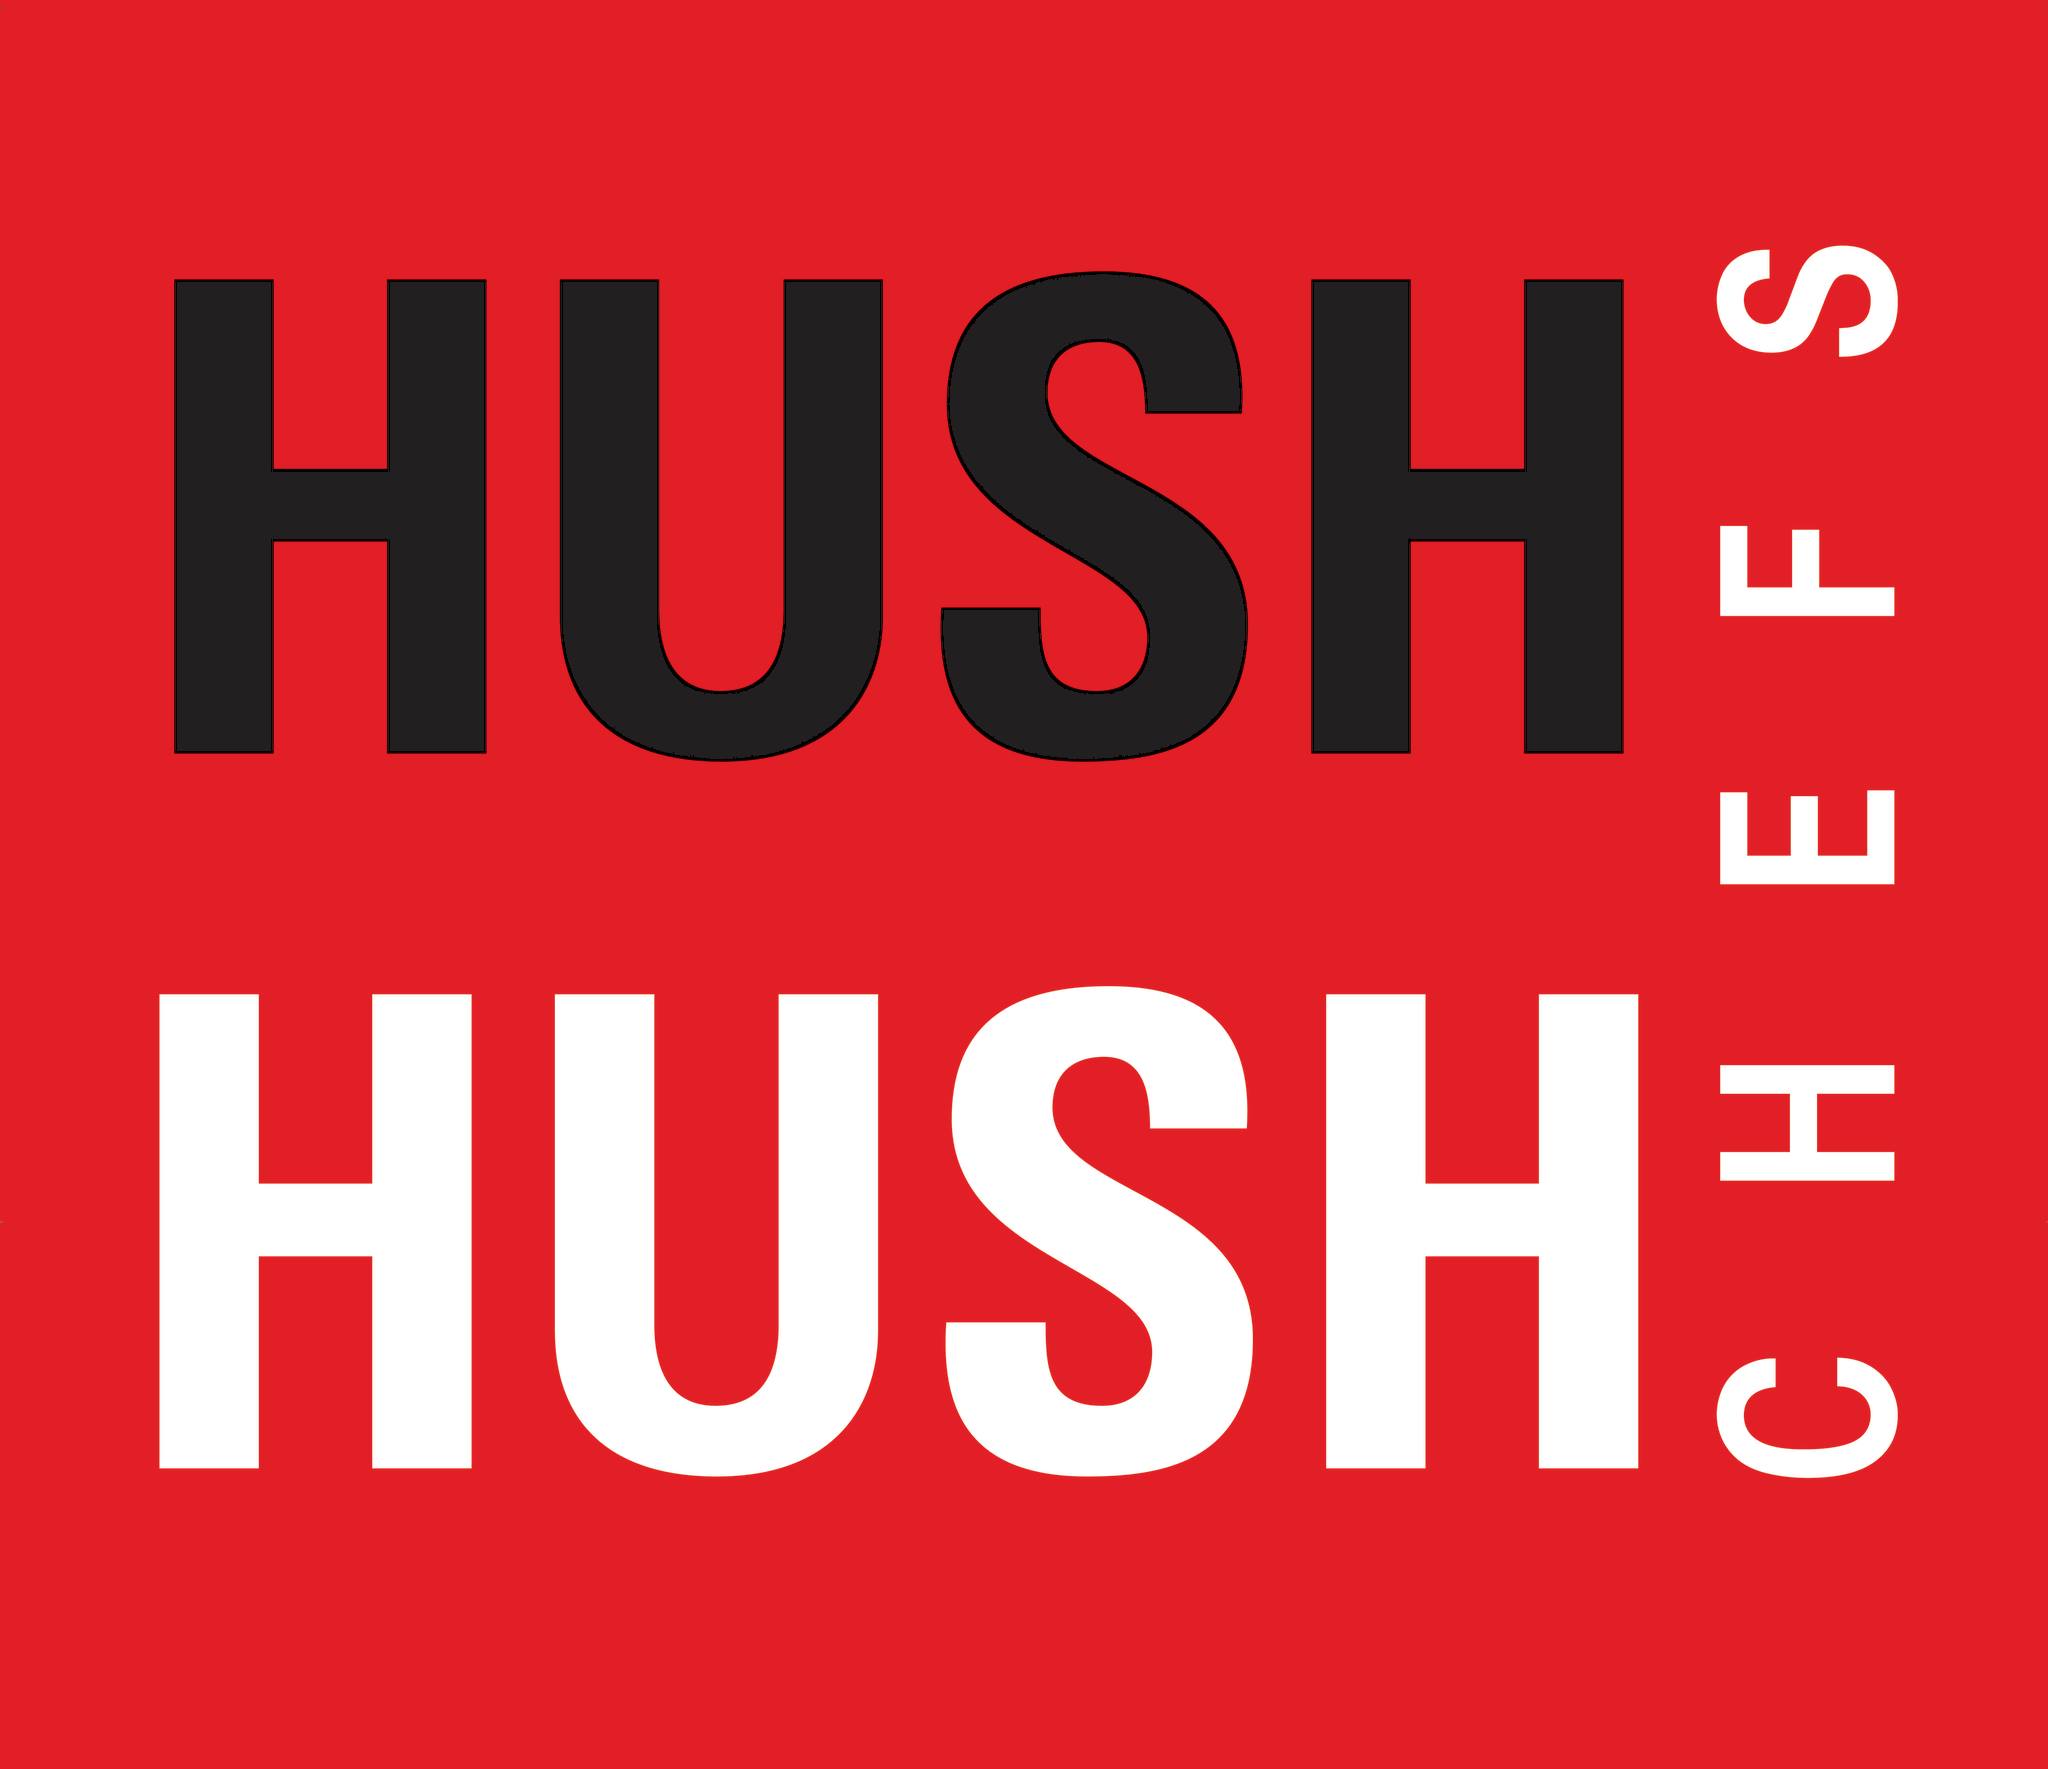 Hush Hush Chefs